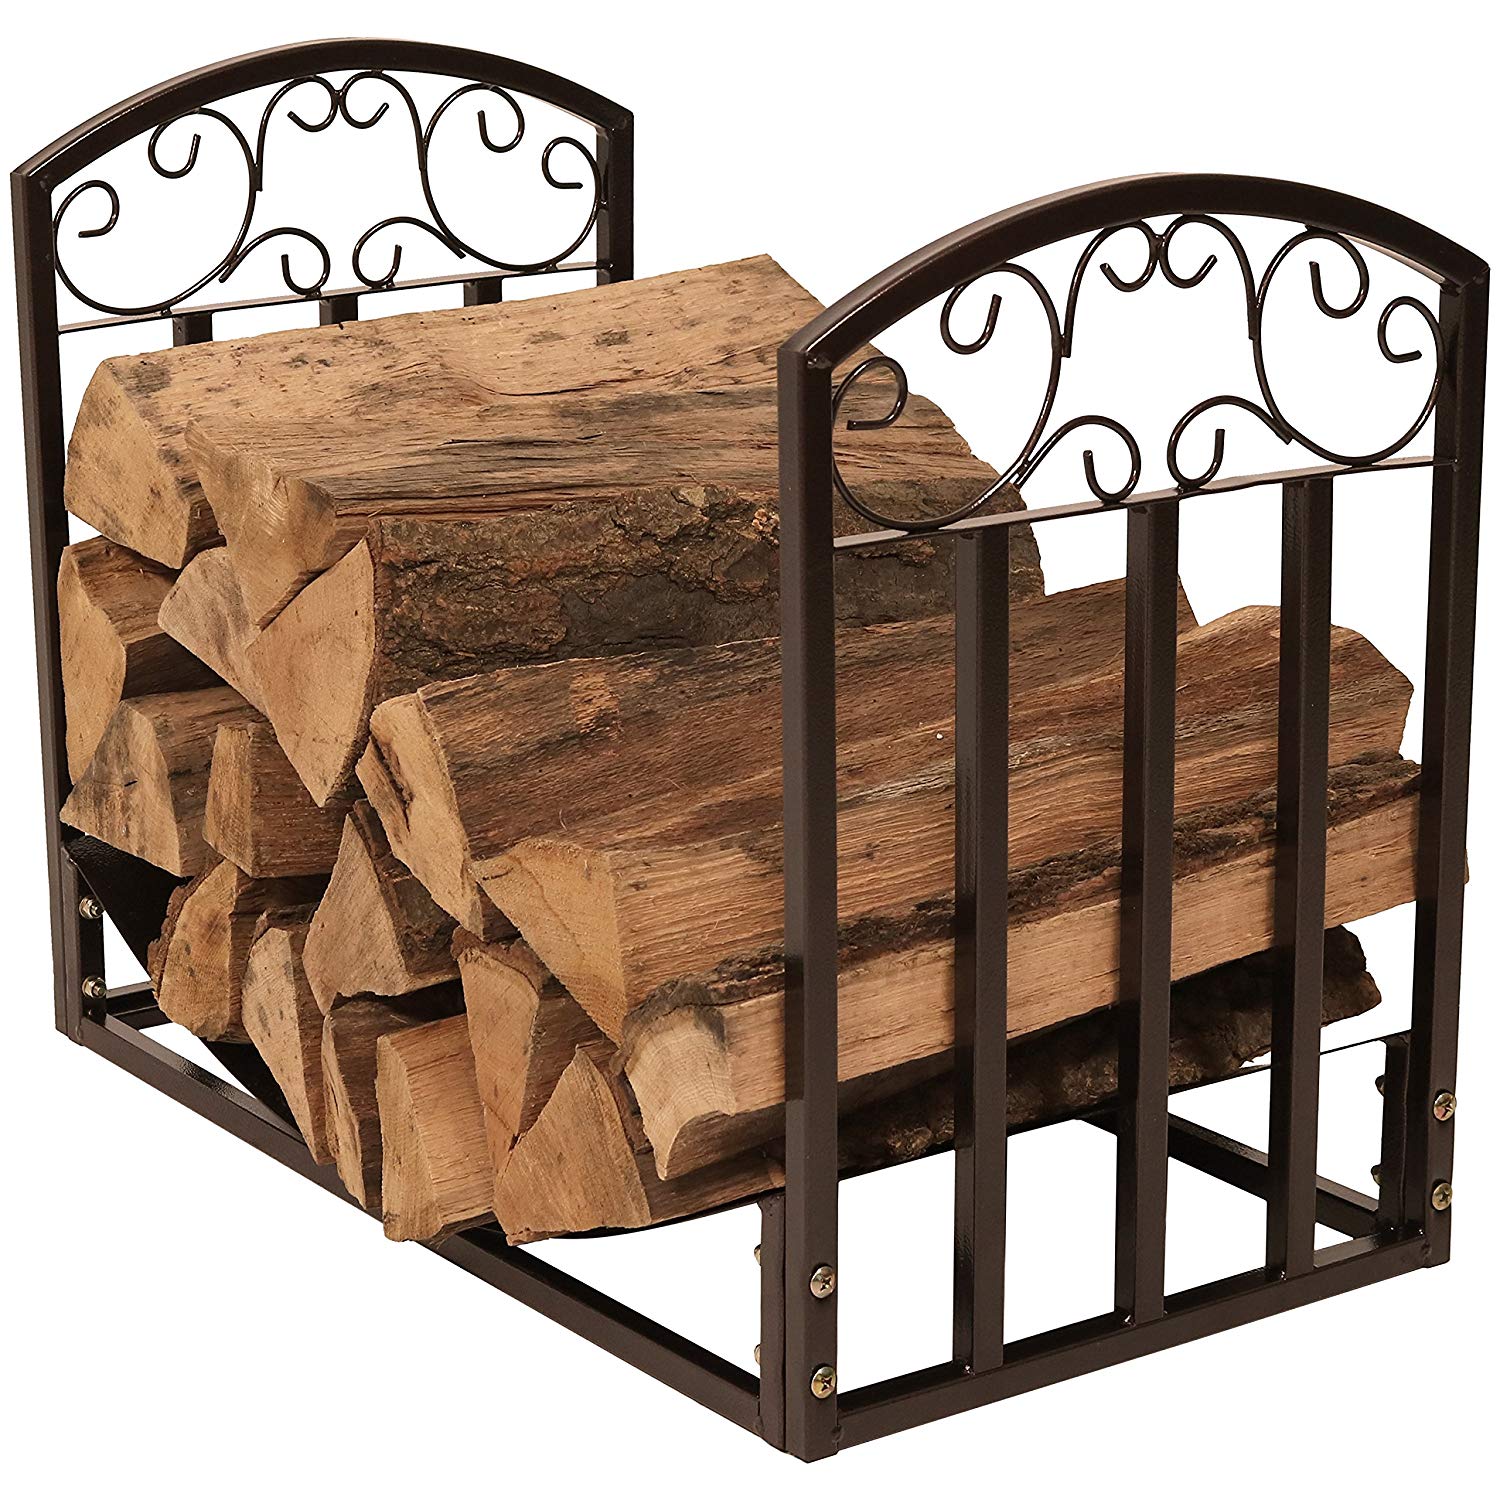 Log Holder for Inside Fireplace Luxury Sunnydaze 2 Foot Firewood Log Rack Indoor or Outdoor Wood Storage Decorative Design Bronze